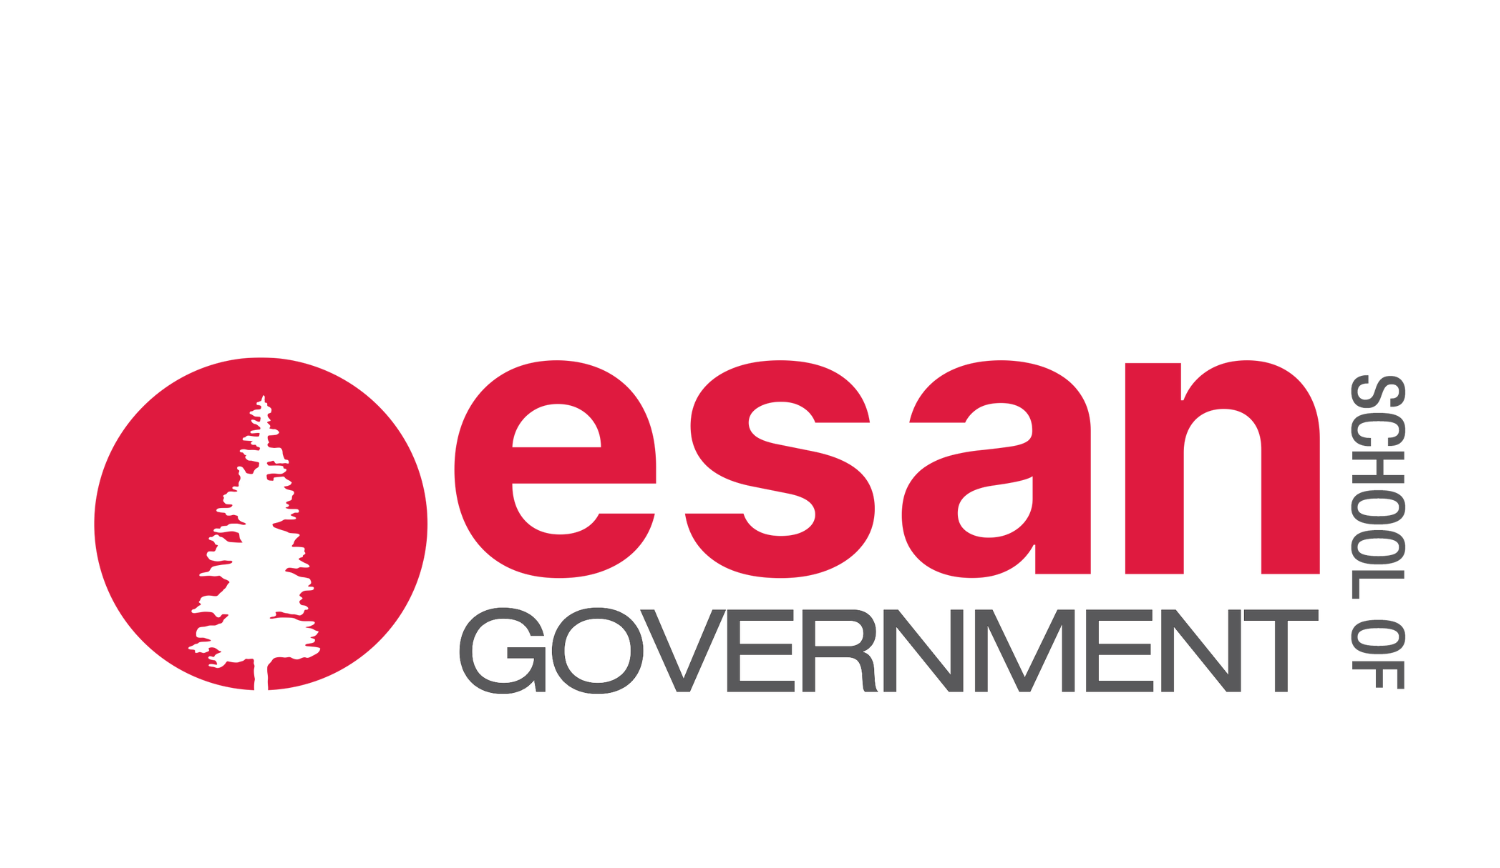 Logo ESN